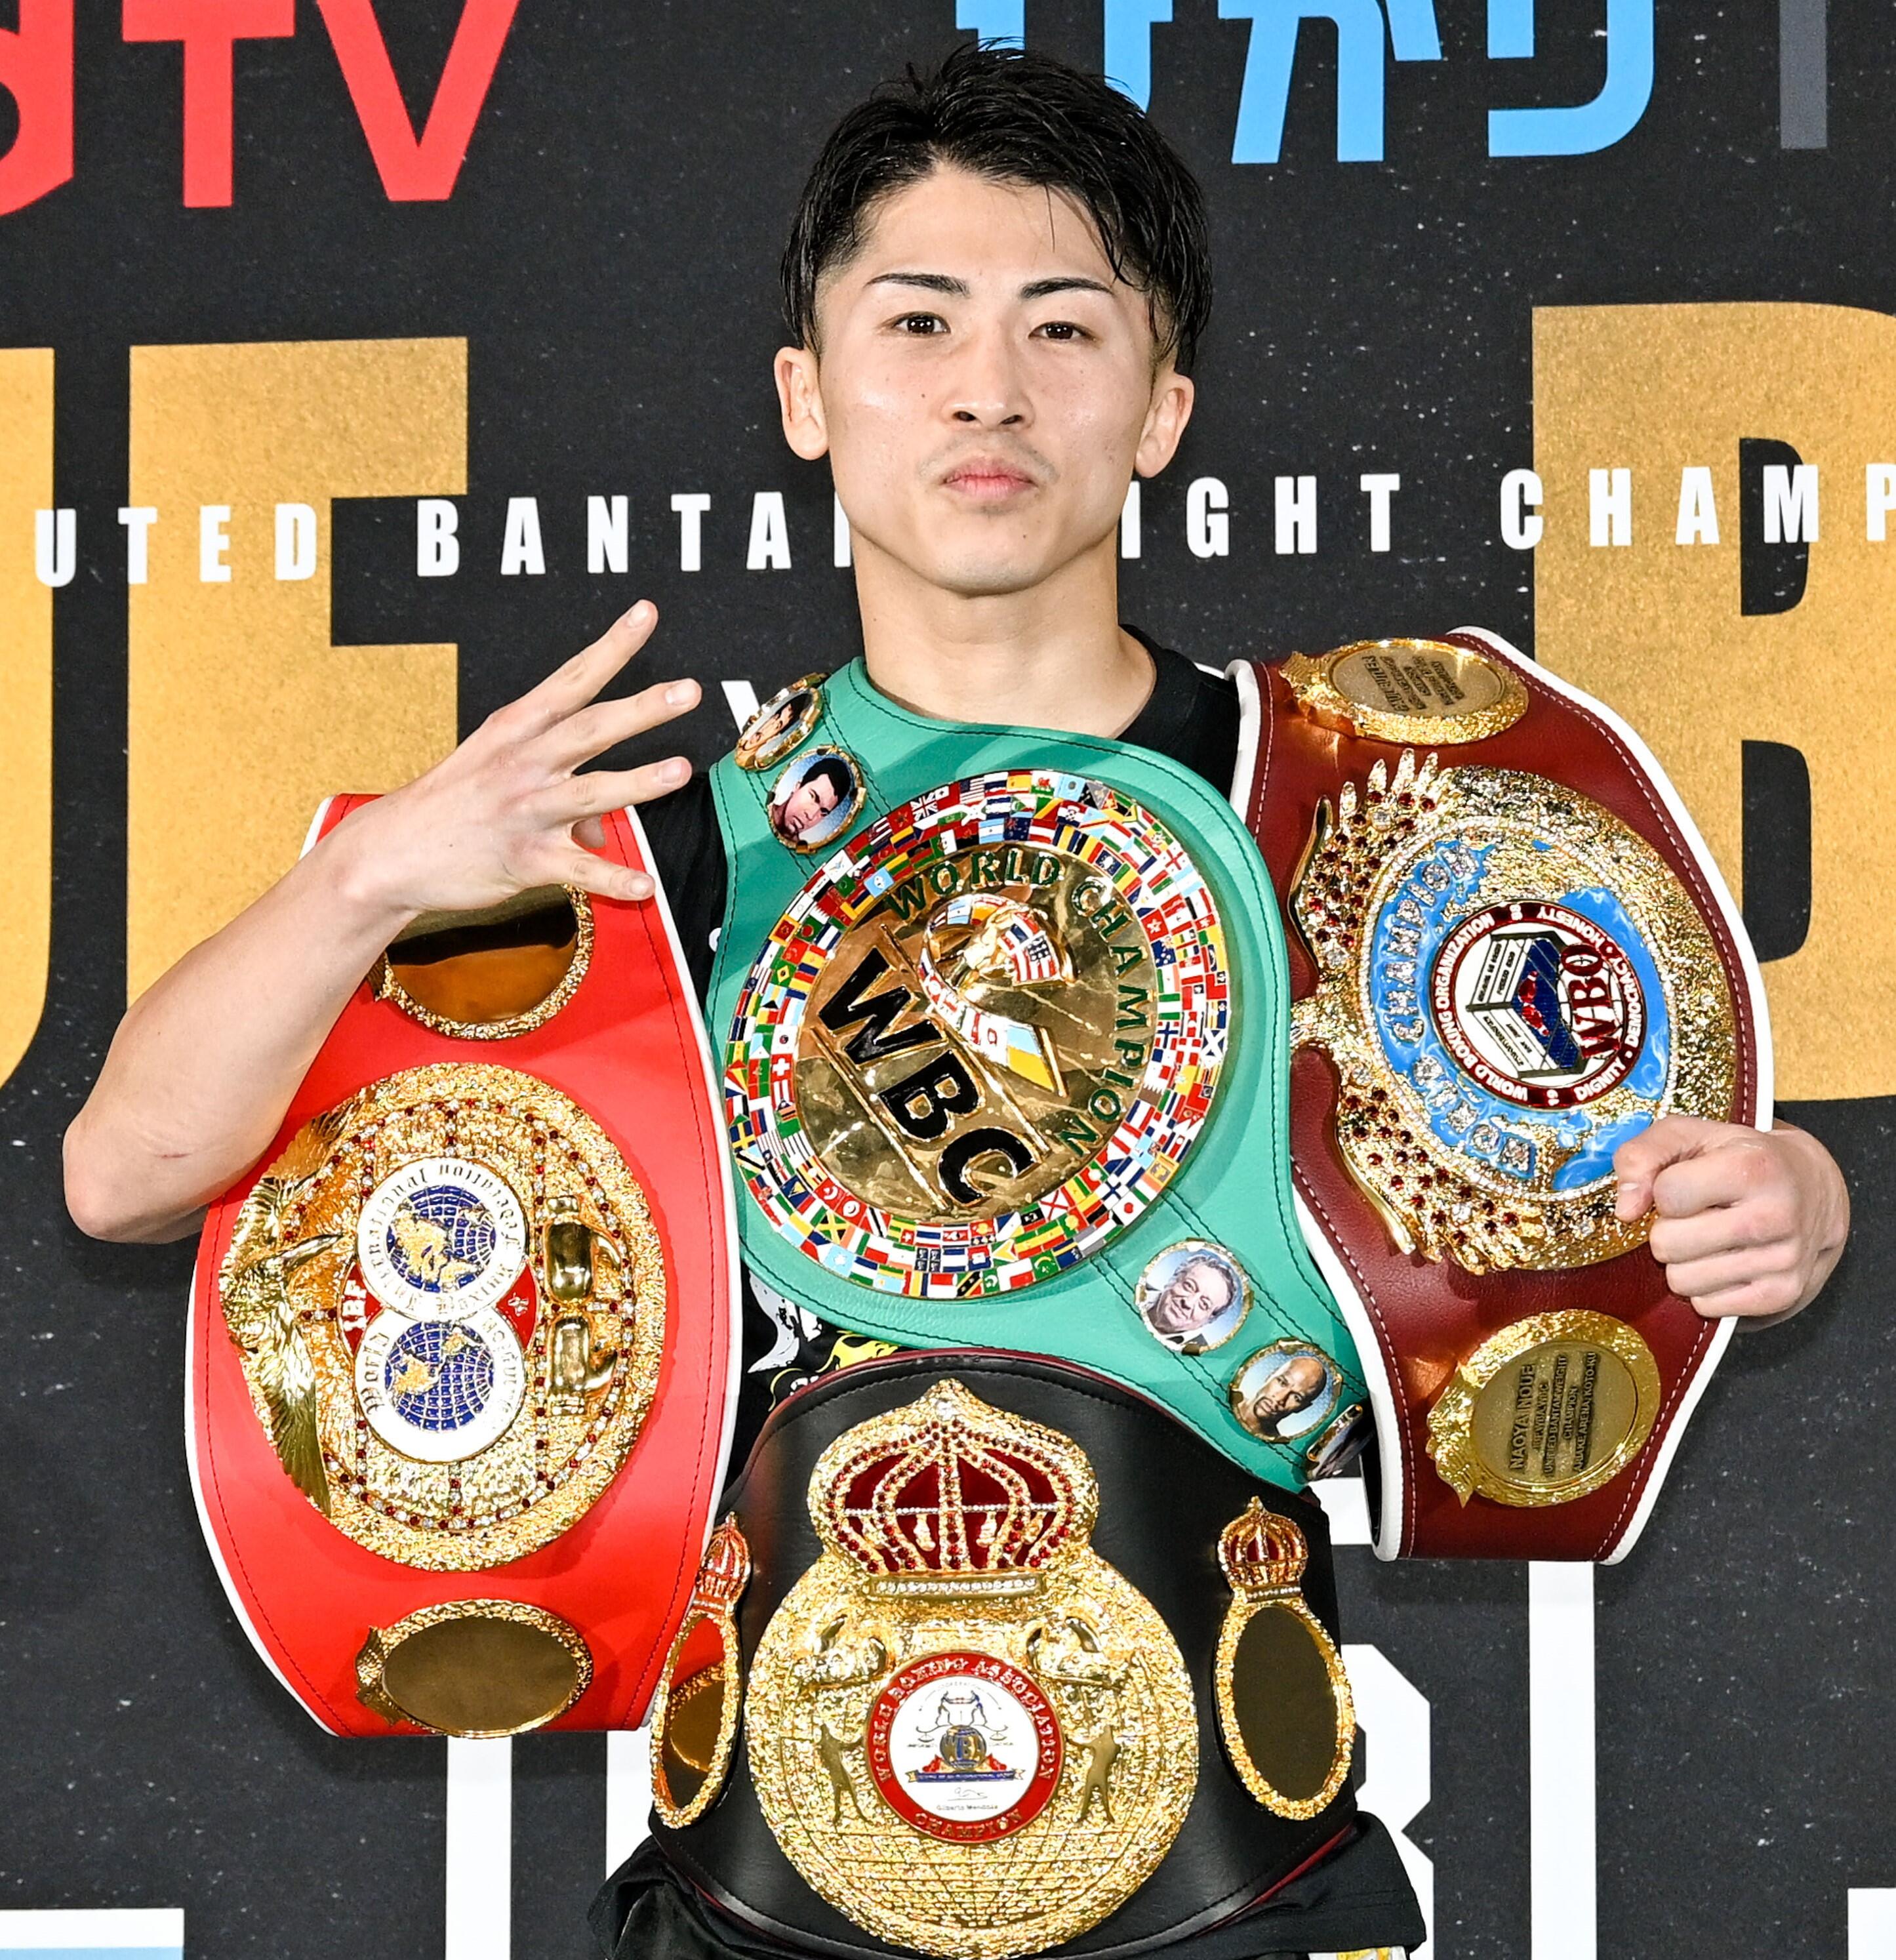 WBCボクシングチャンピオンベルト レプリカ 井上尚弥 - その他スポーツ